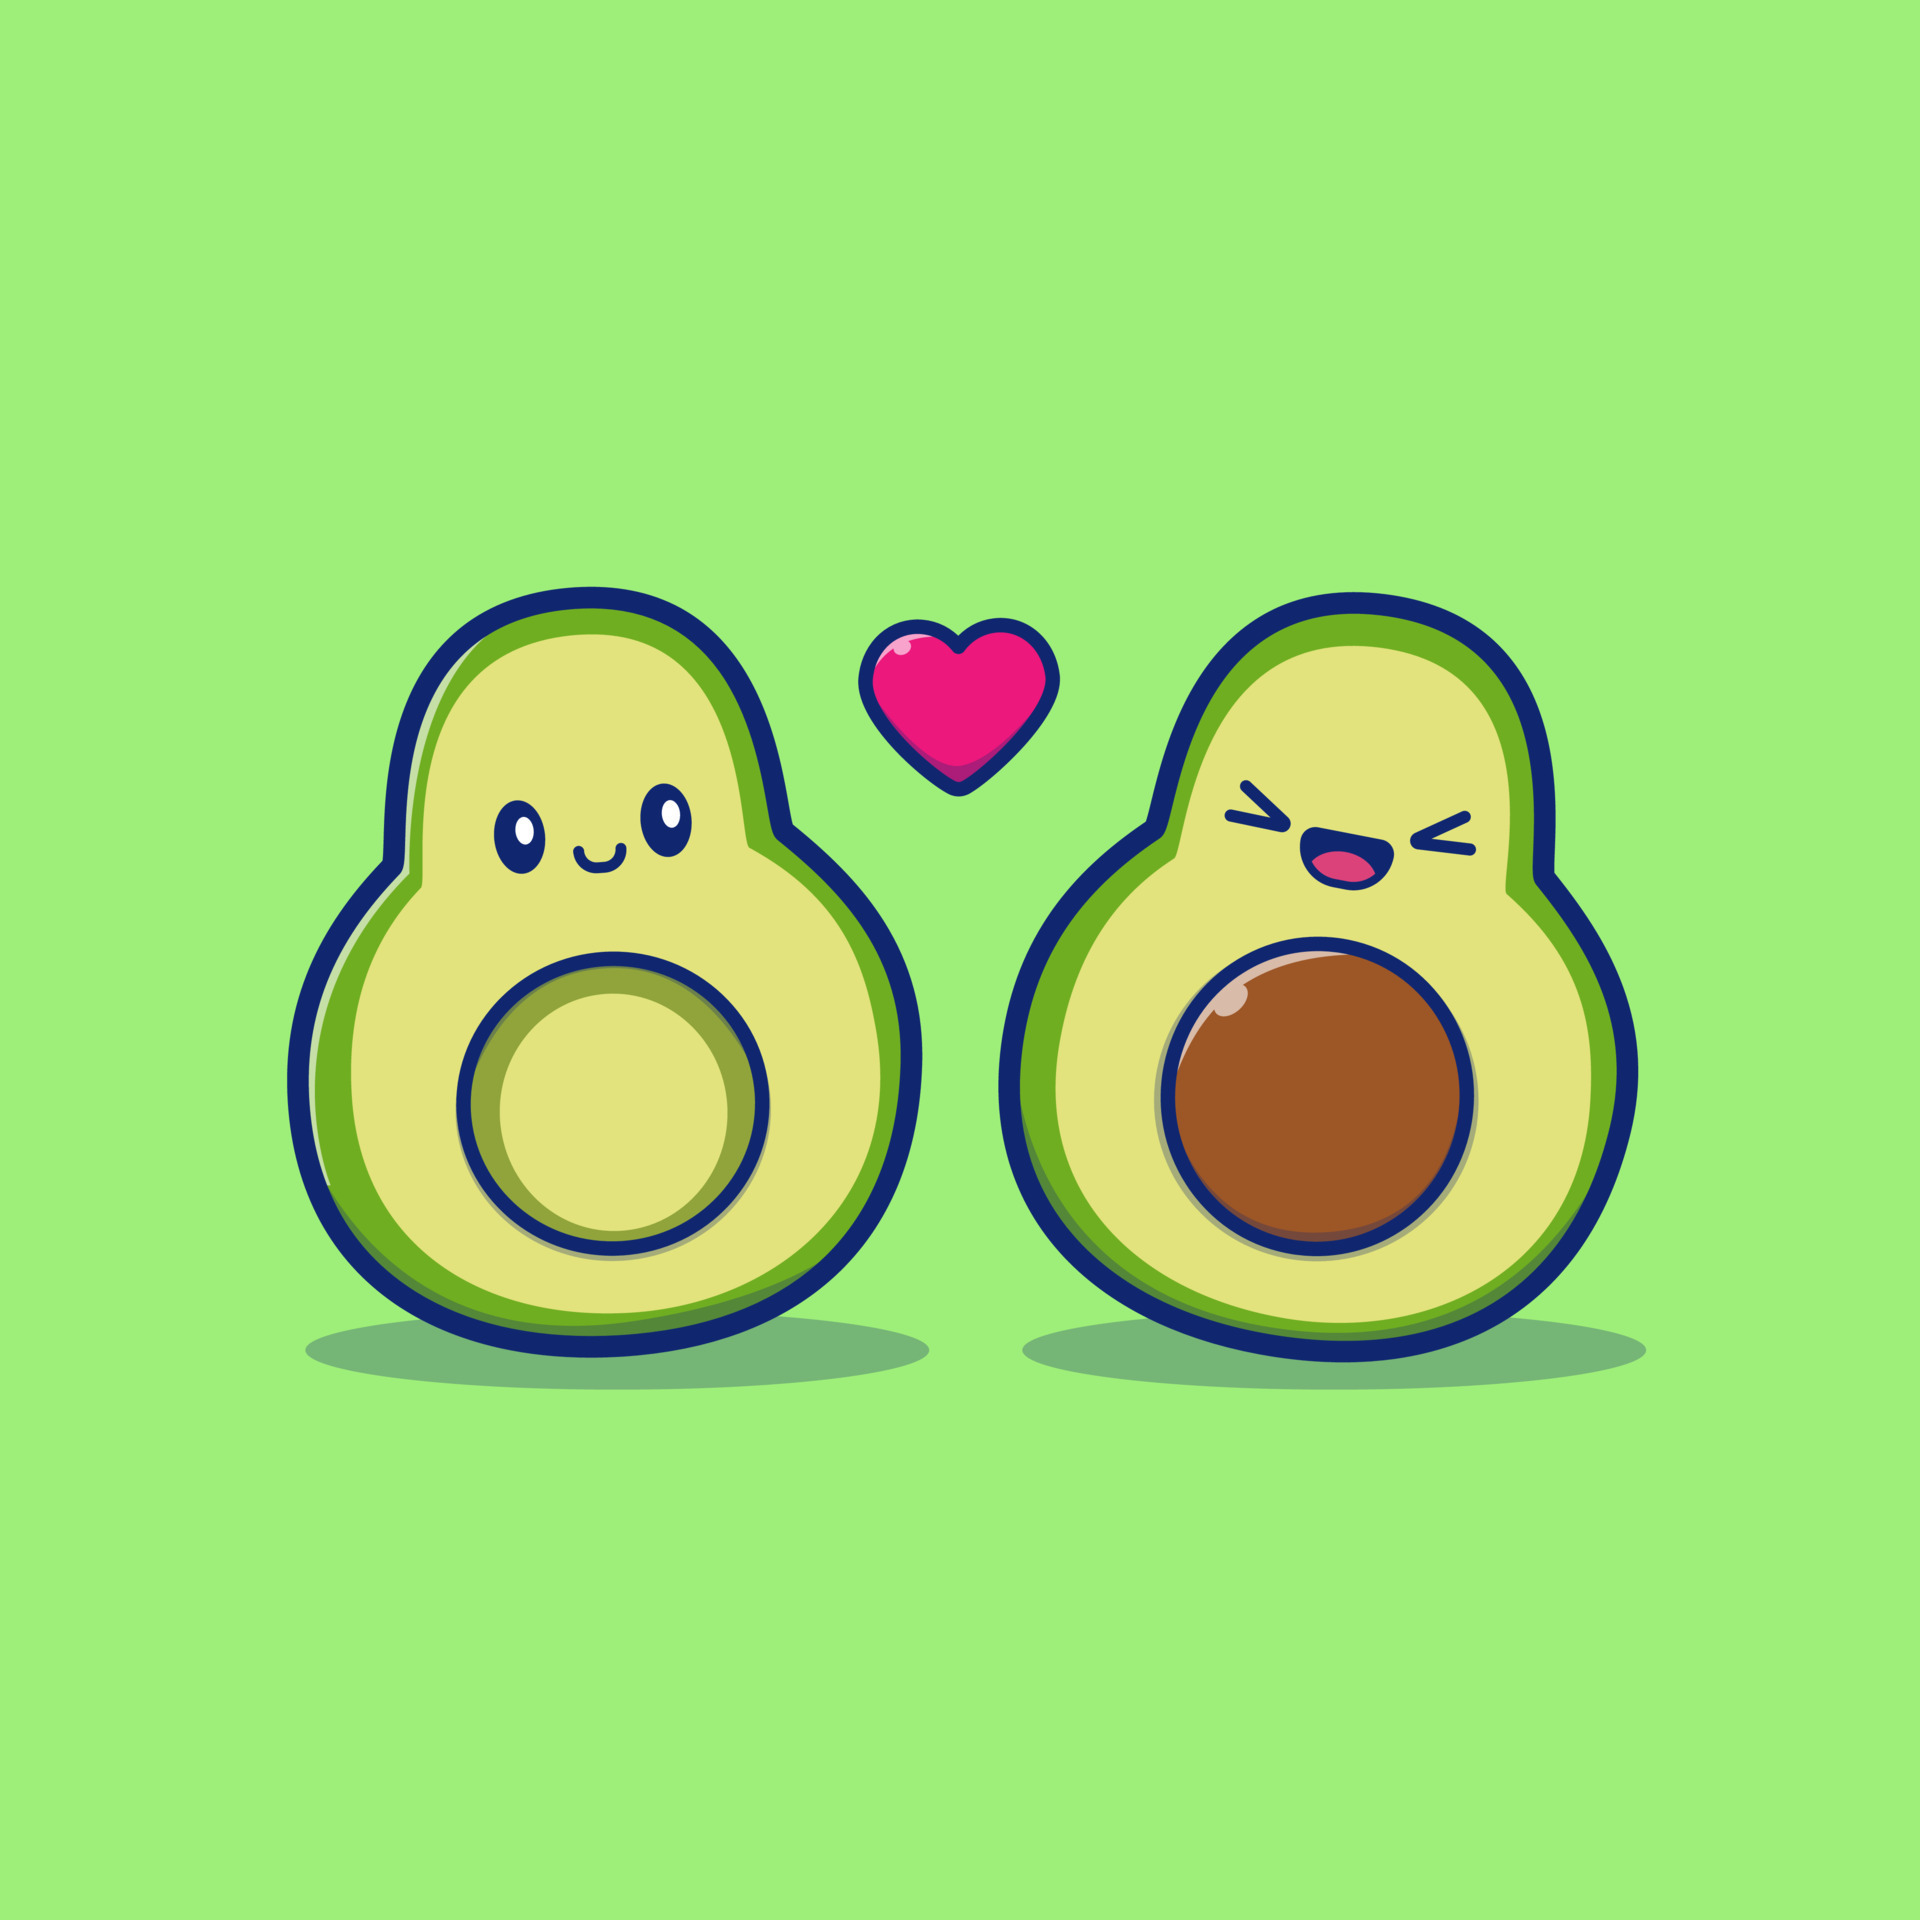 Süße avocado verliebt grüne früchte paar süße vegetarische romantische  lebensmittel cartoon-valentinstag-figuren mit herzen genaue vektorkarte  illustration liebe avocado gemüse charakter gesundheit vegan